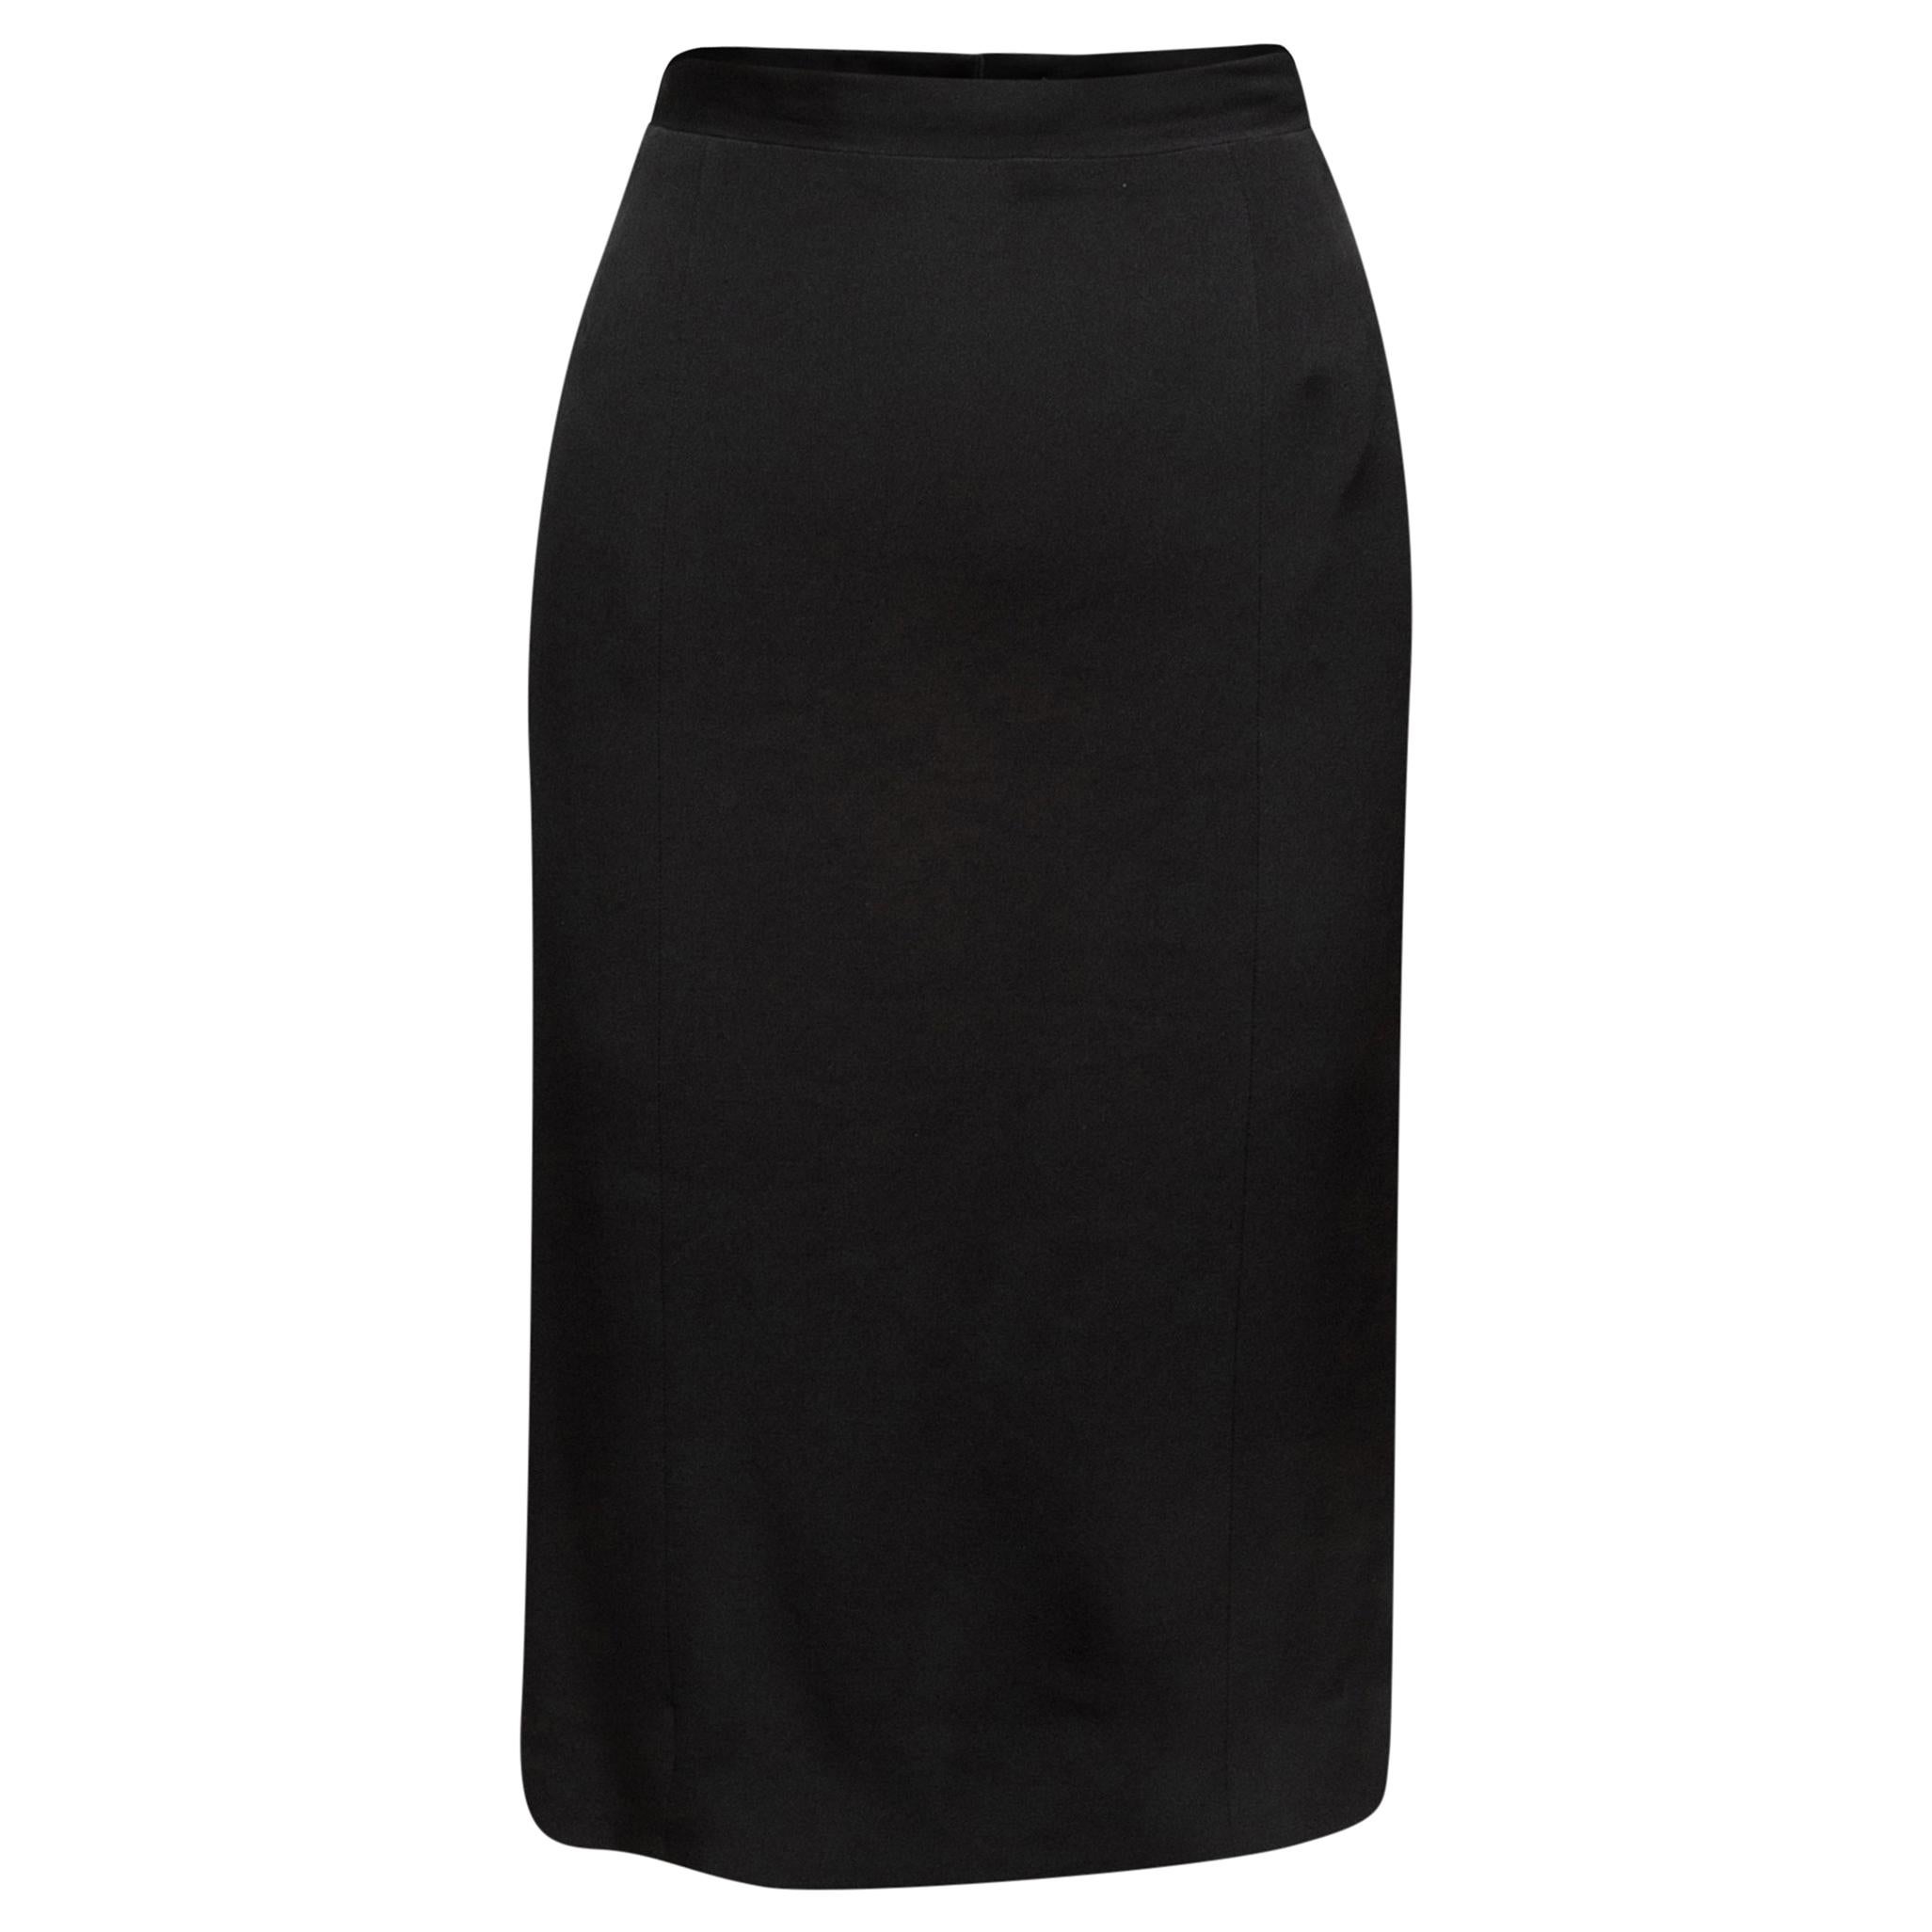 Chanel Boutique Black Pencil Skirt